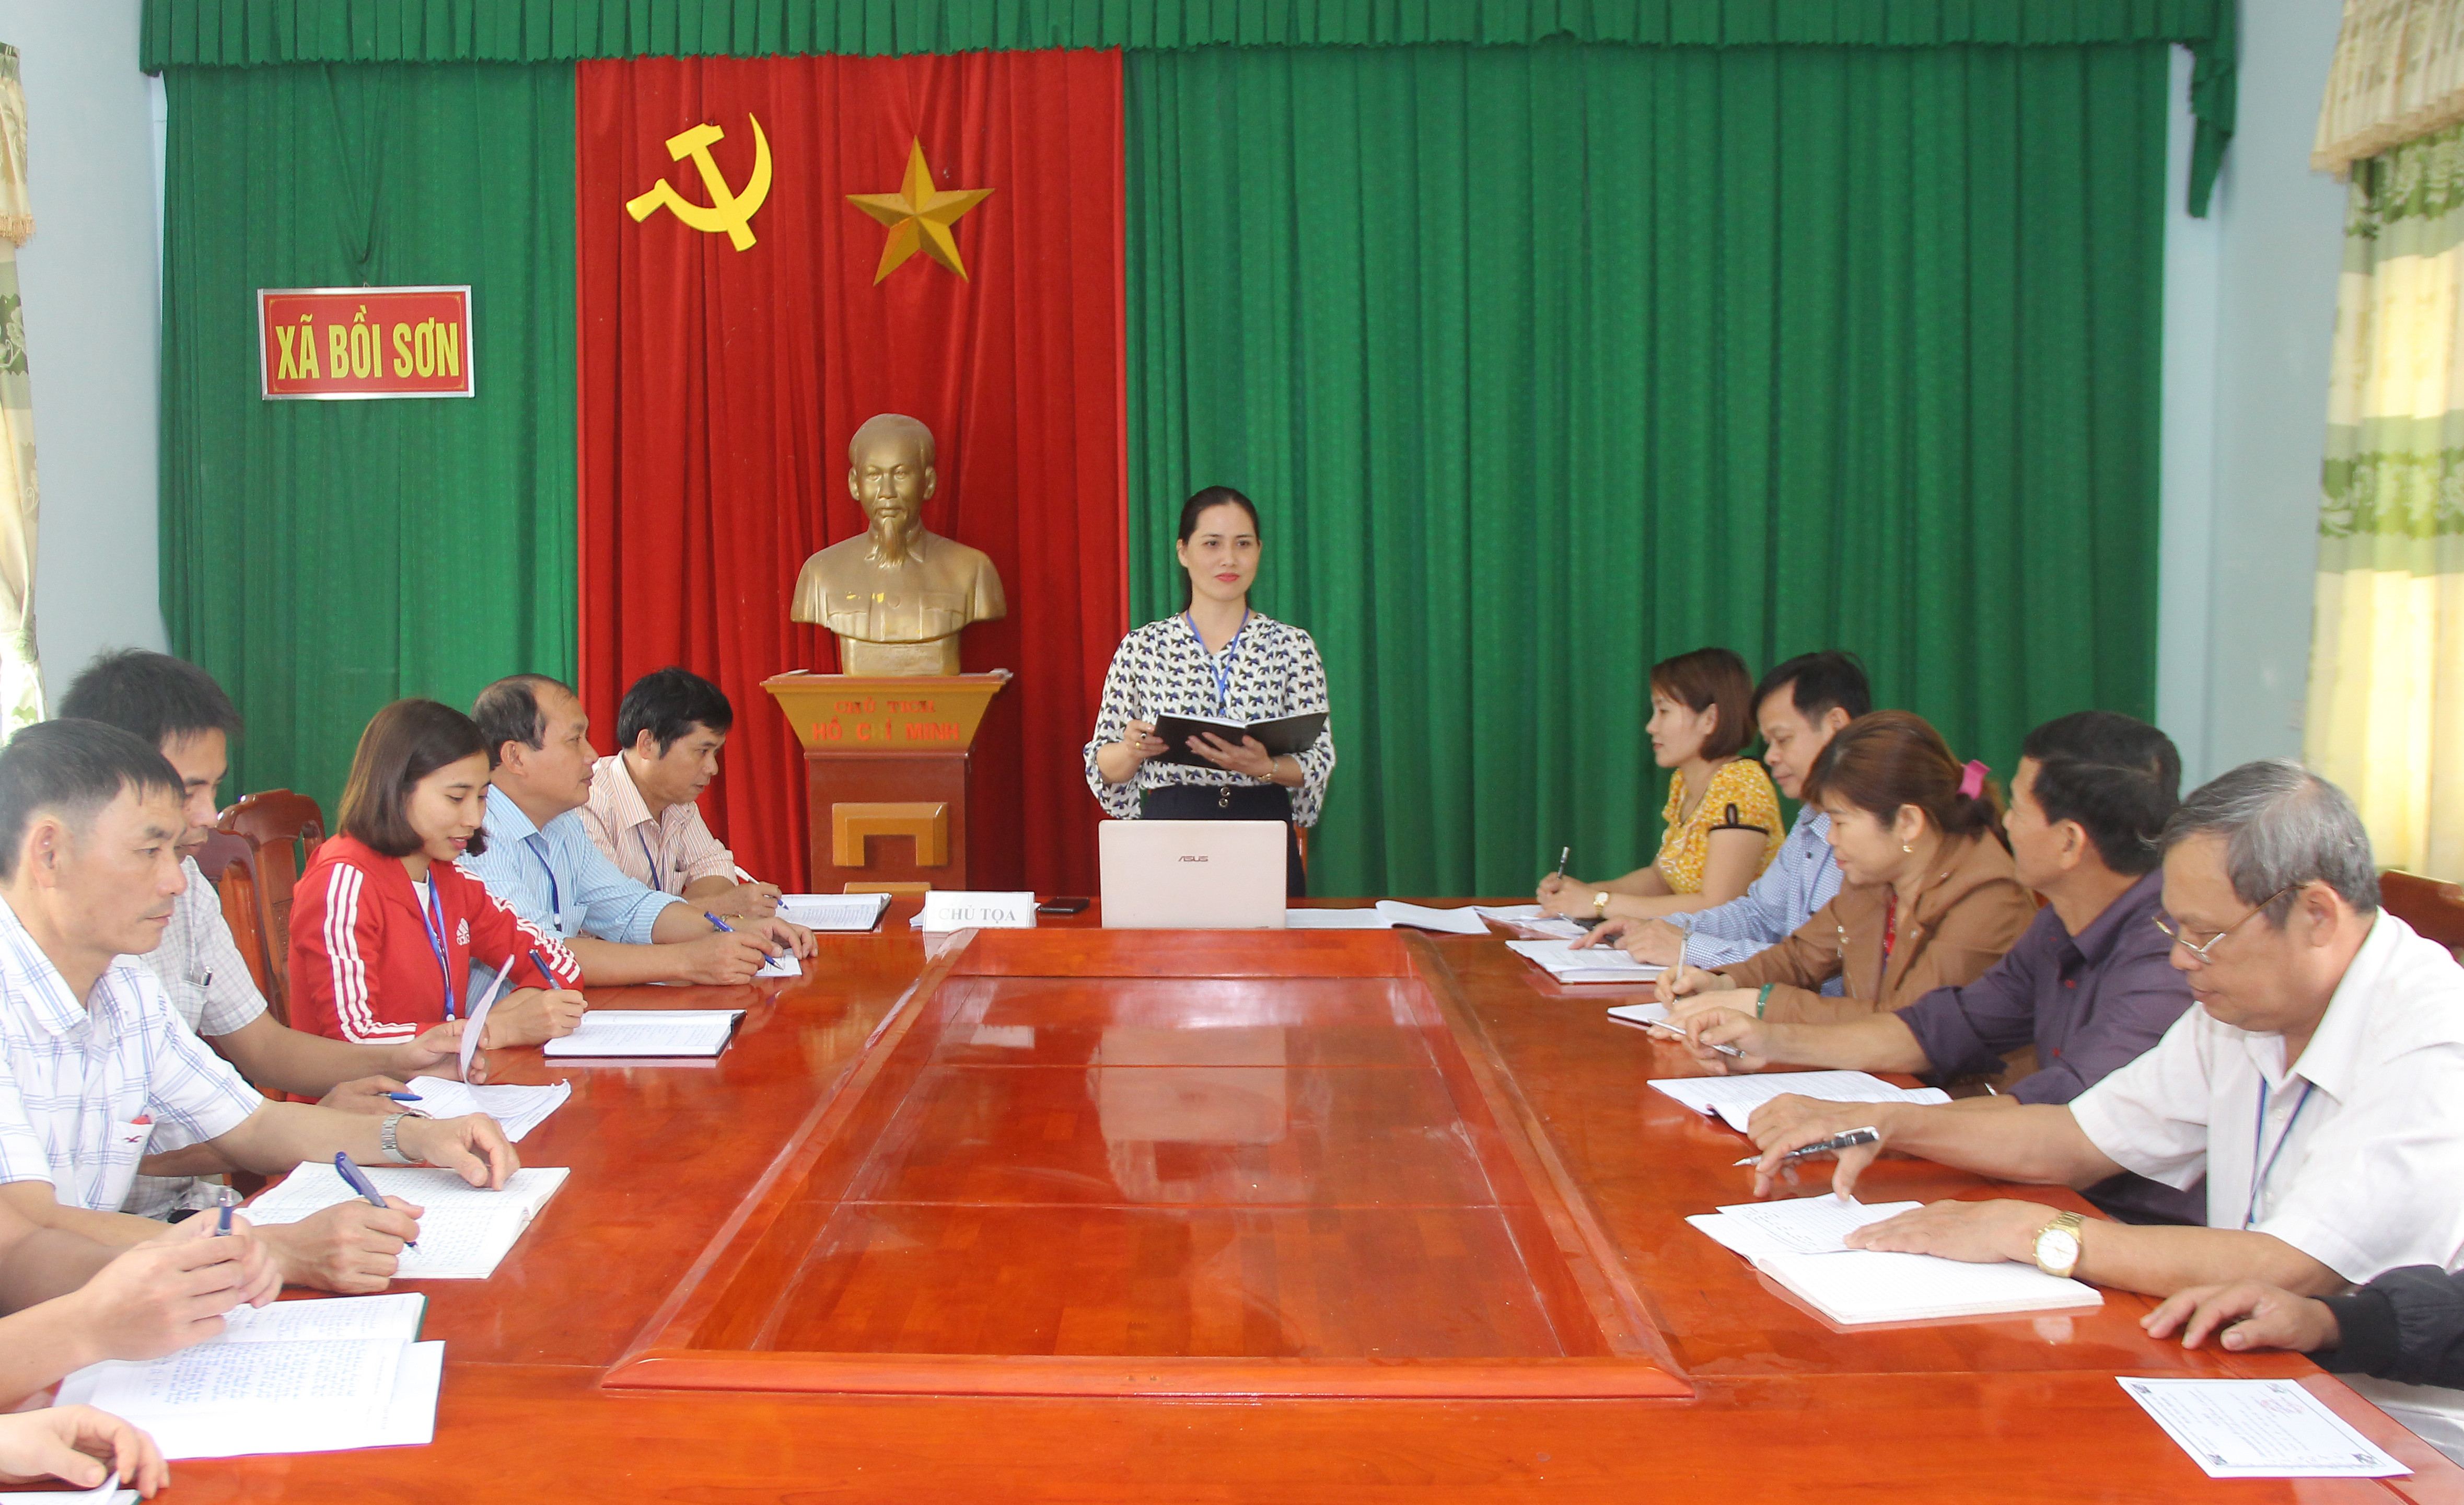 Đảng ủy xã Bồi Sơn (Đô Lương) tại một cuộc họp giao ban. Ảnh: Mai Hoa